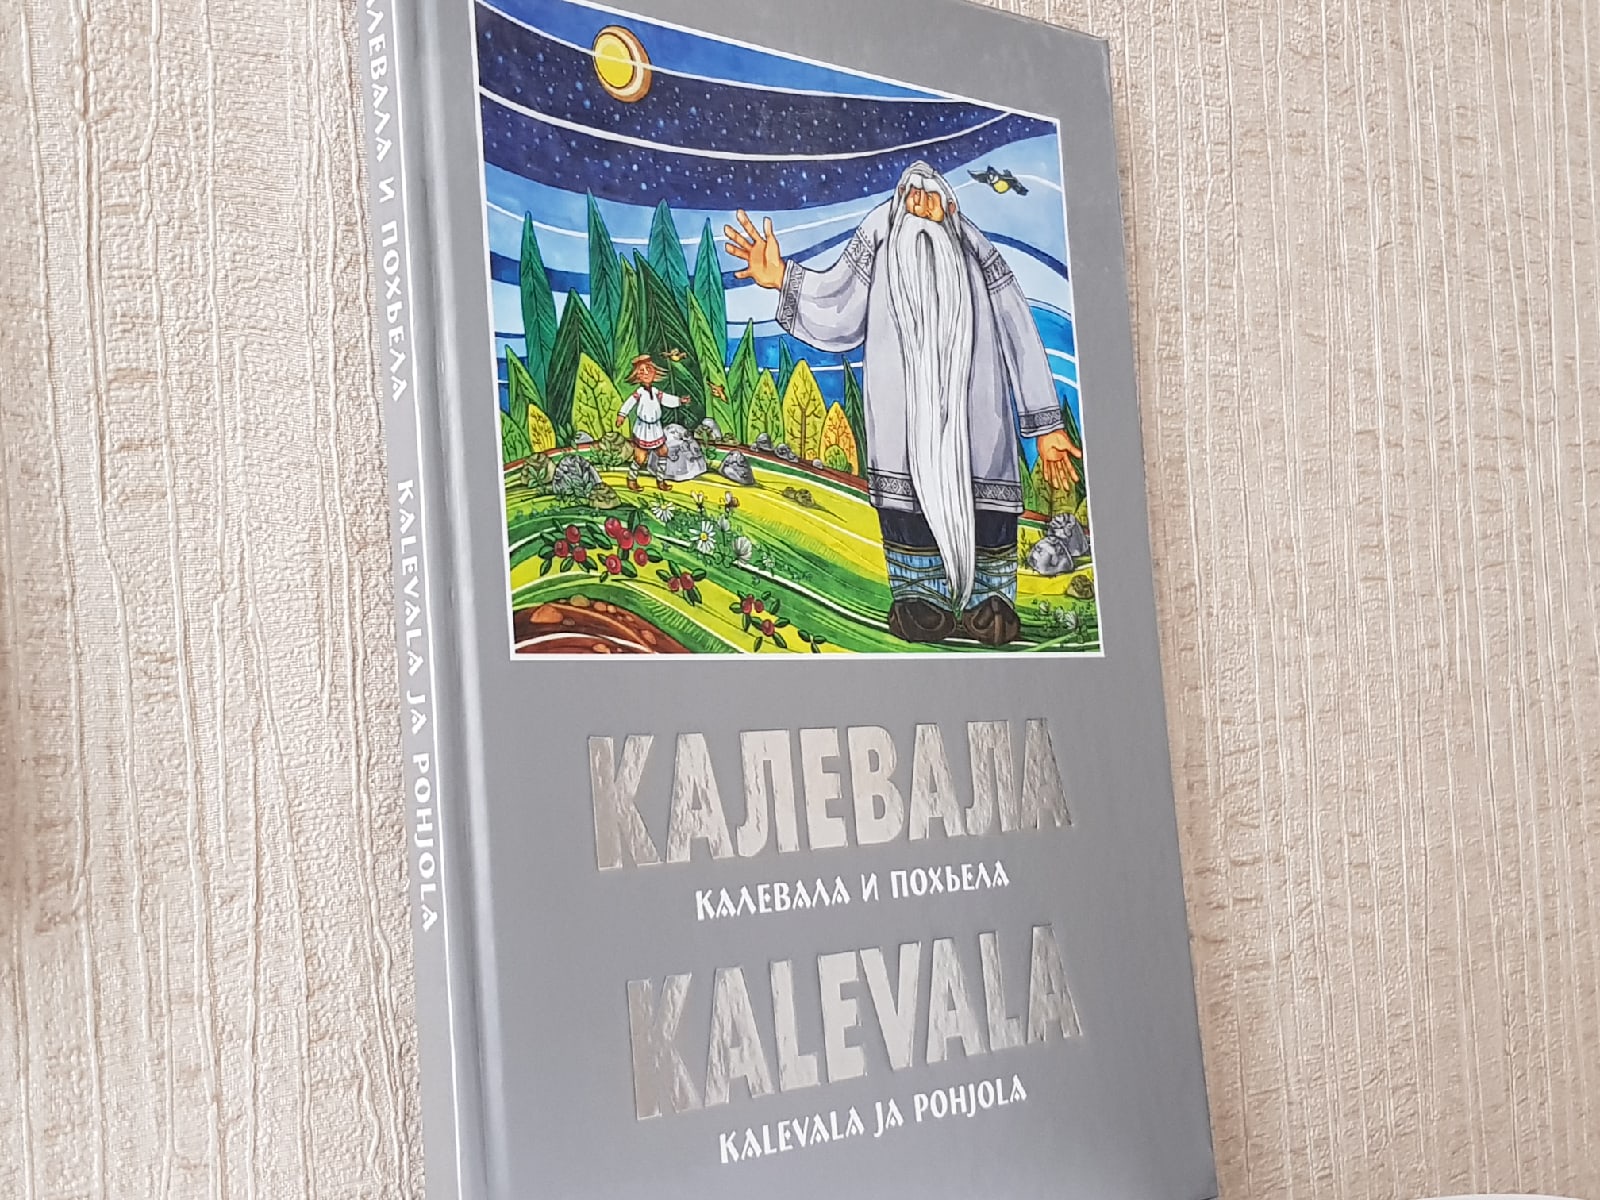 Сегодня в Финляндии и Карелии отмечают день народного эпоса "Калевала"